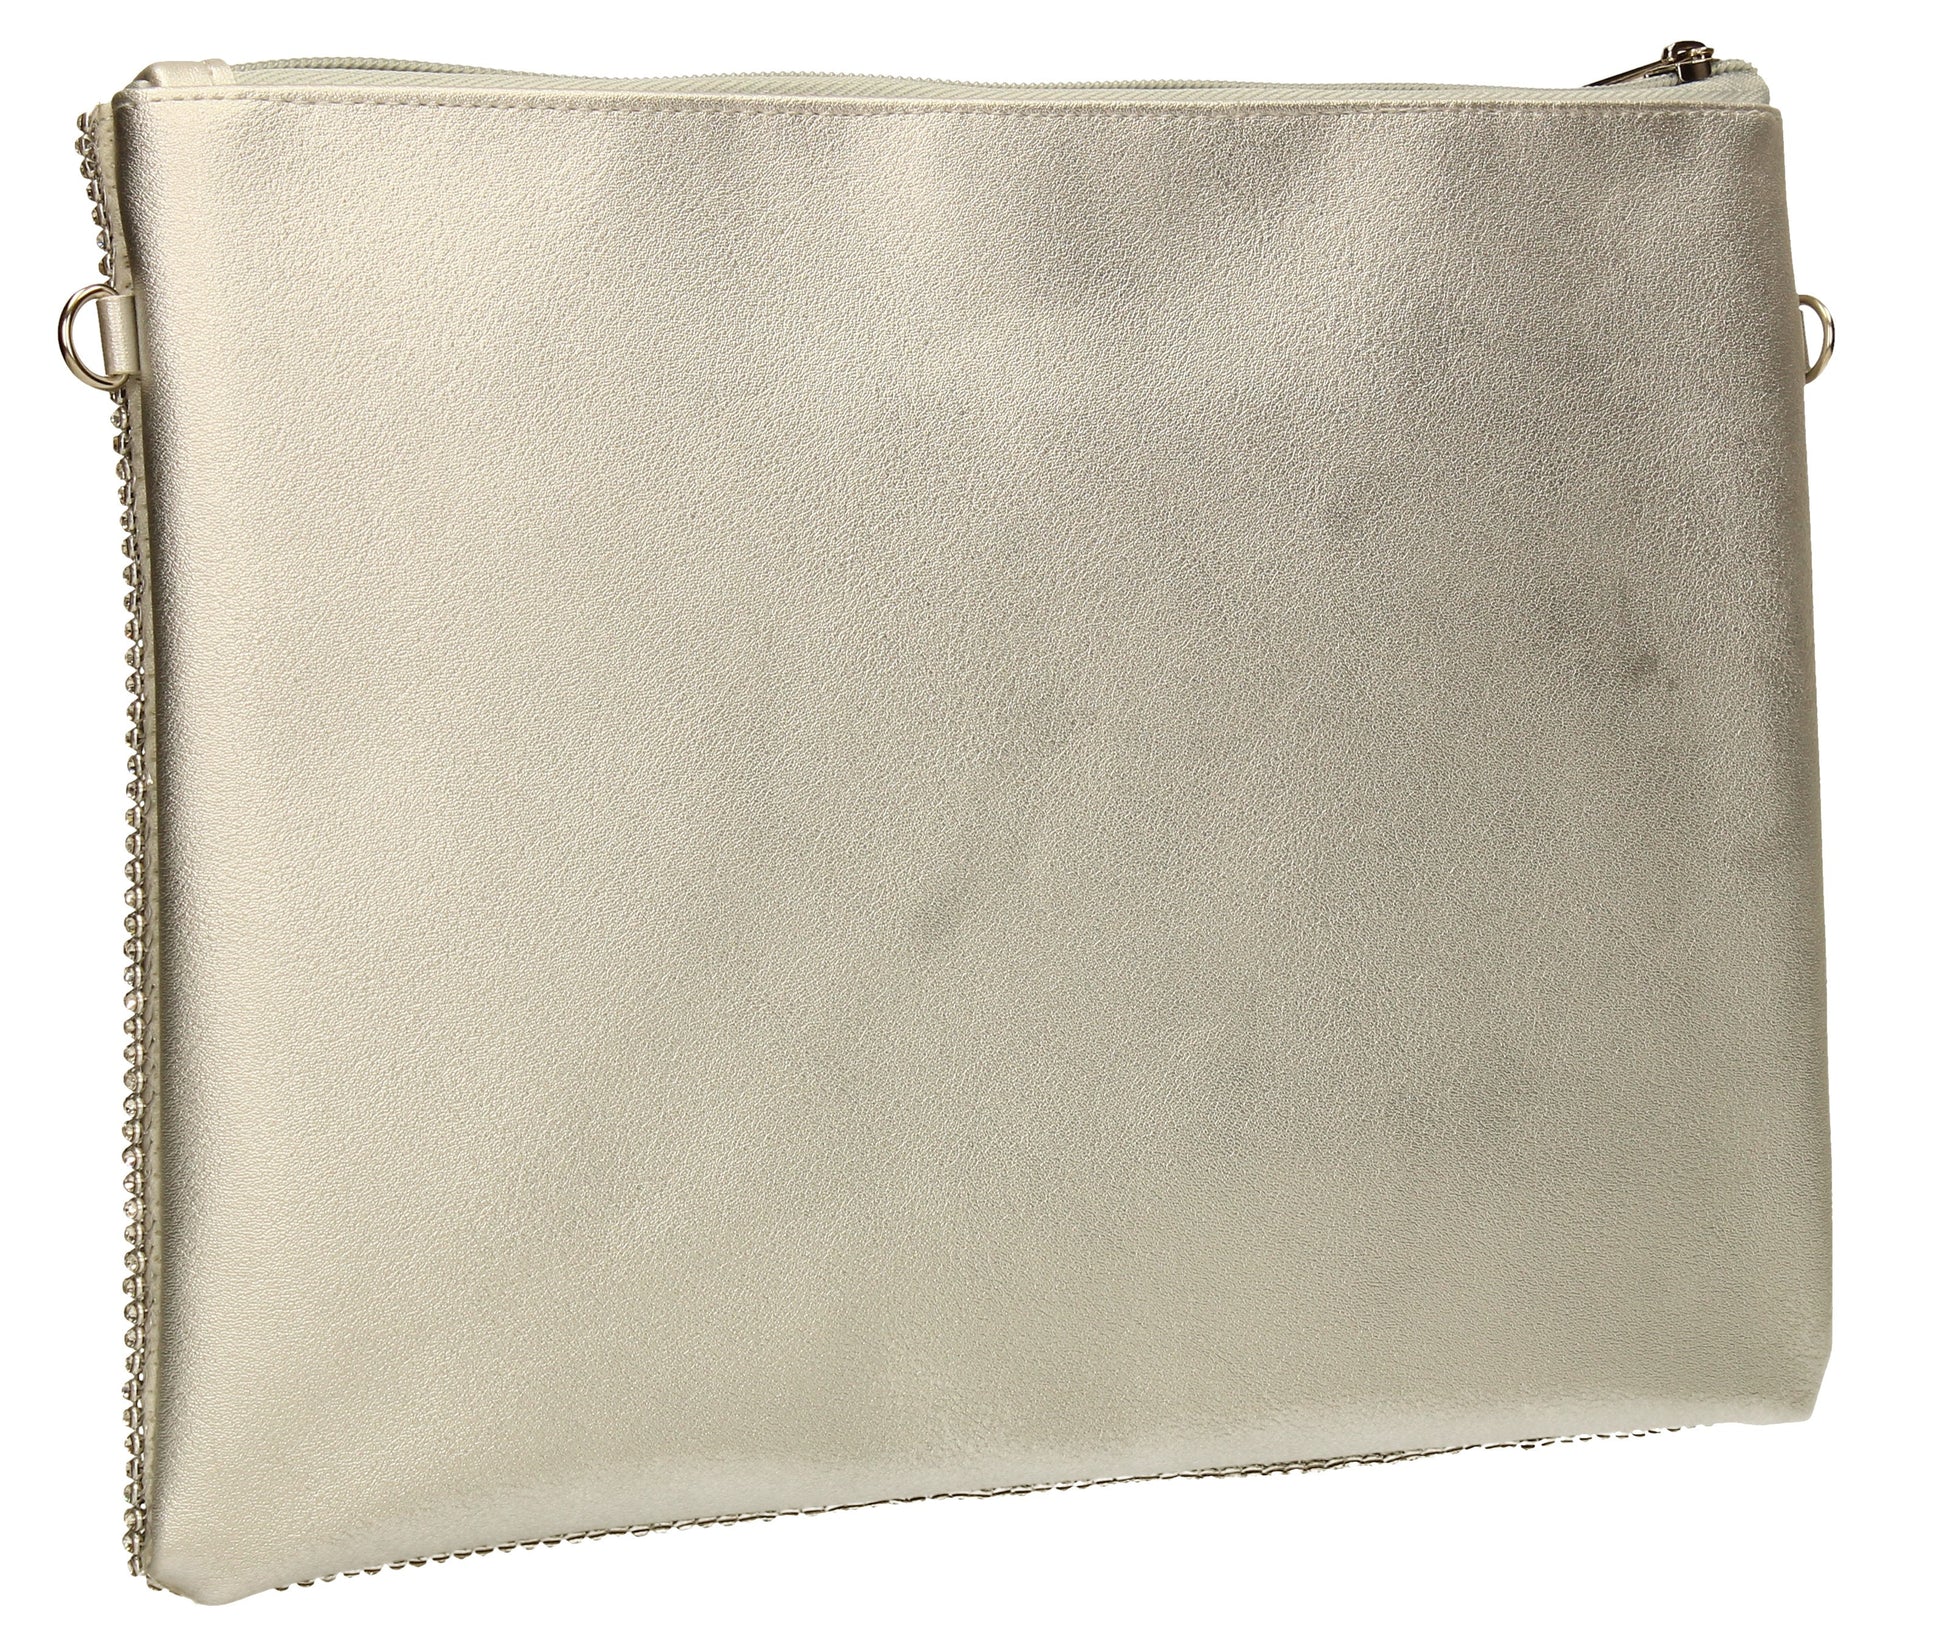 SWANKYSWANS Marla Slim Clutch Bag Silver Cute Cheap Clutch Bag For Weddings School and Work